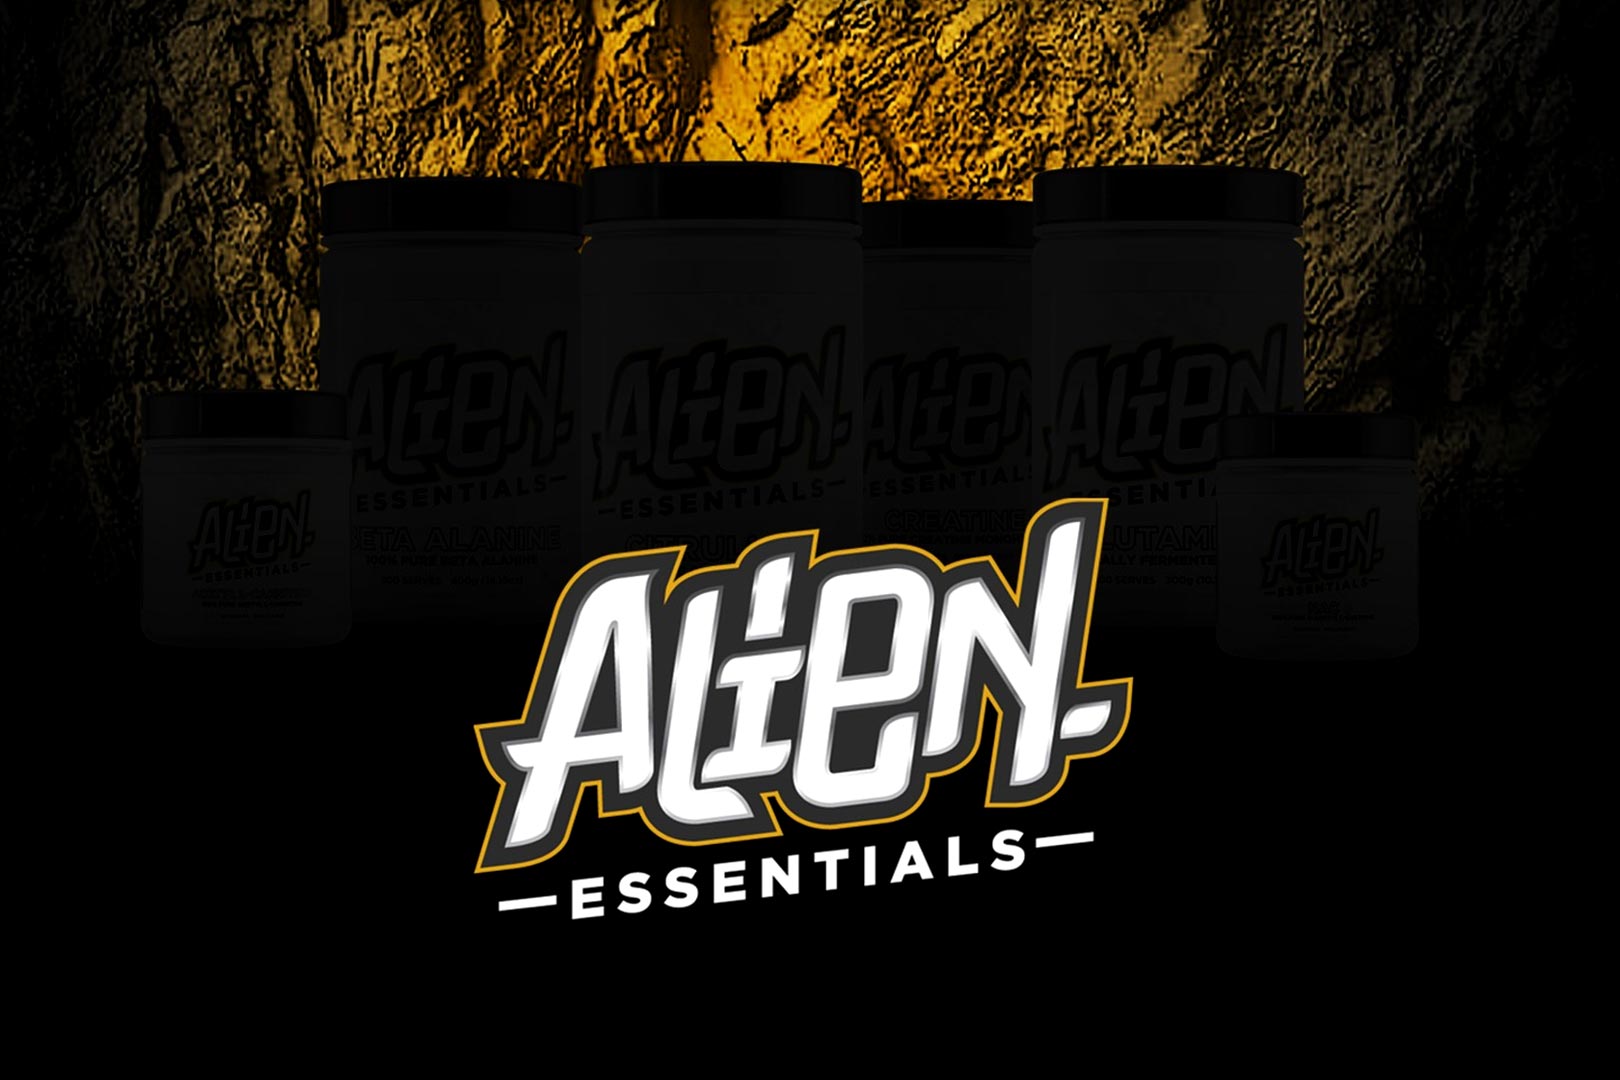 Alien Supps Announces Essentials Series